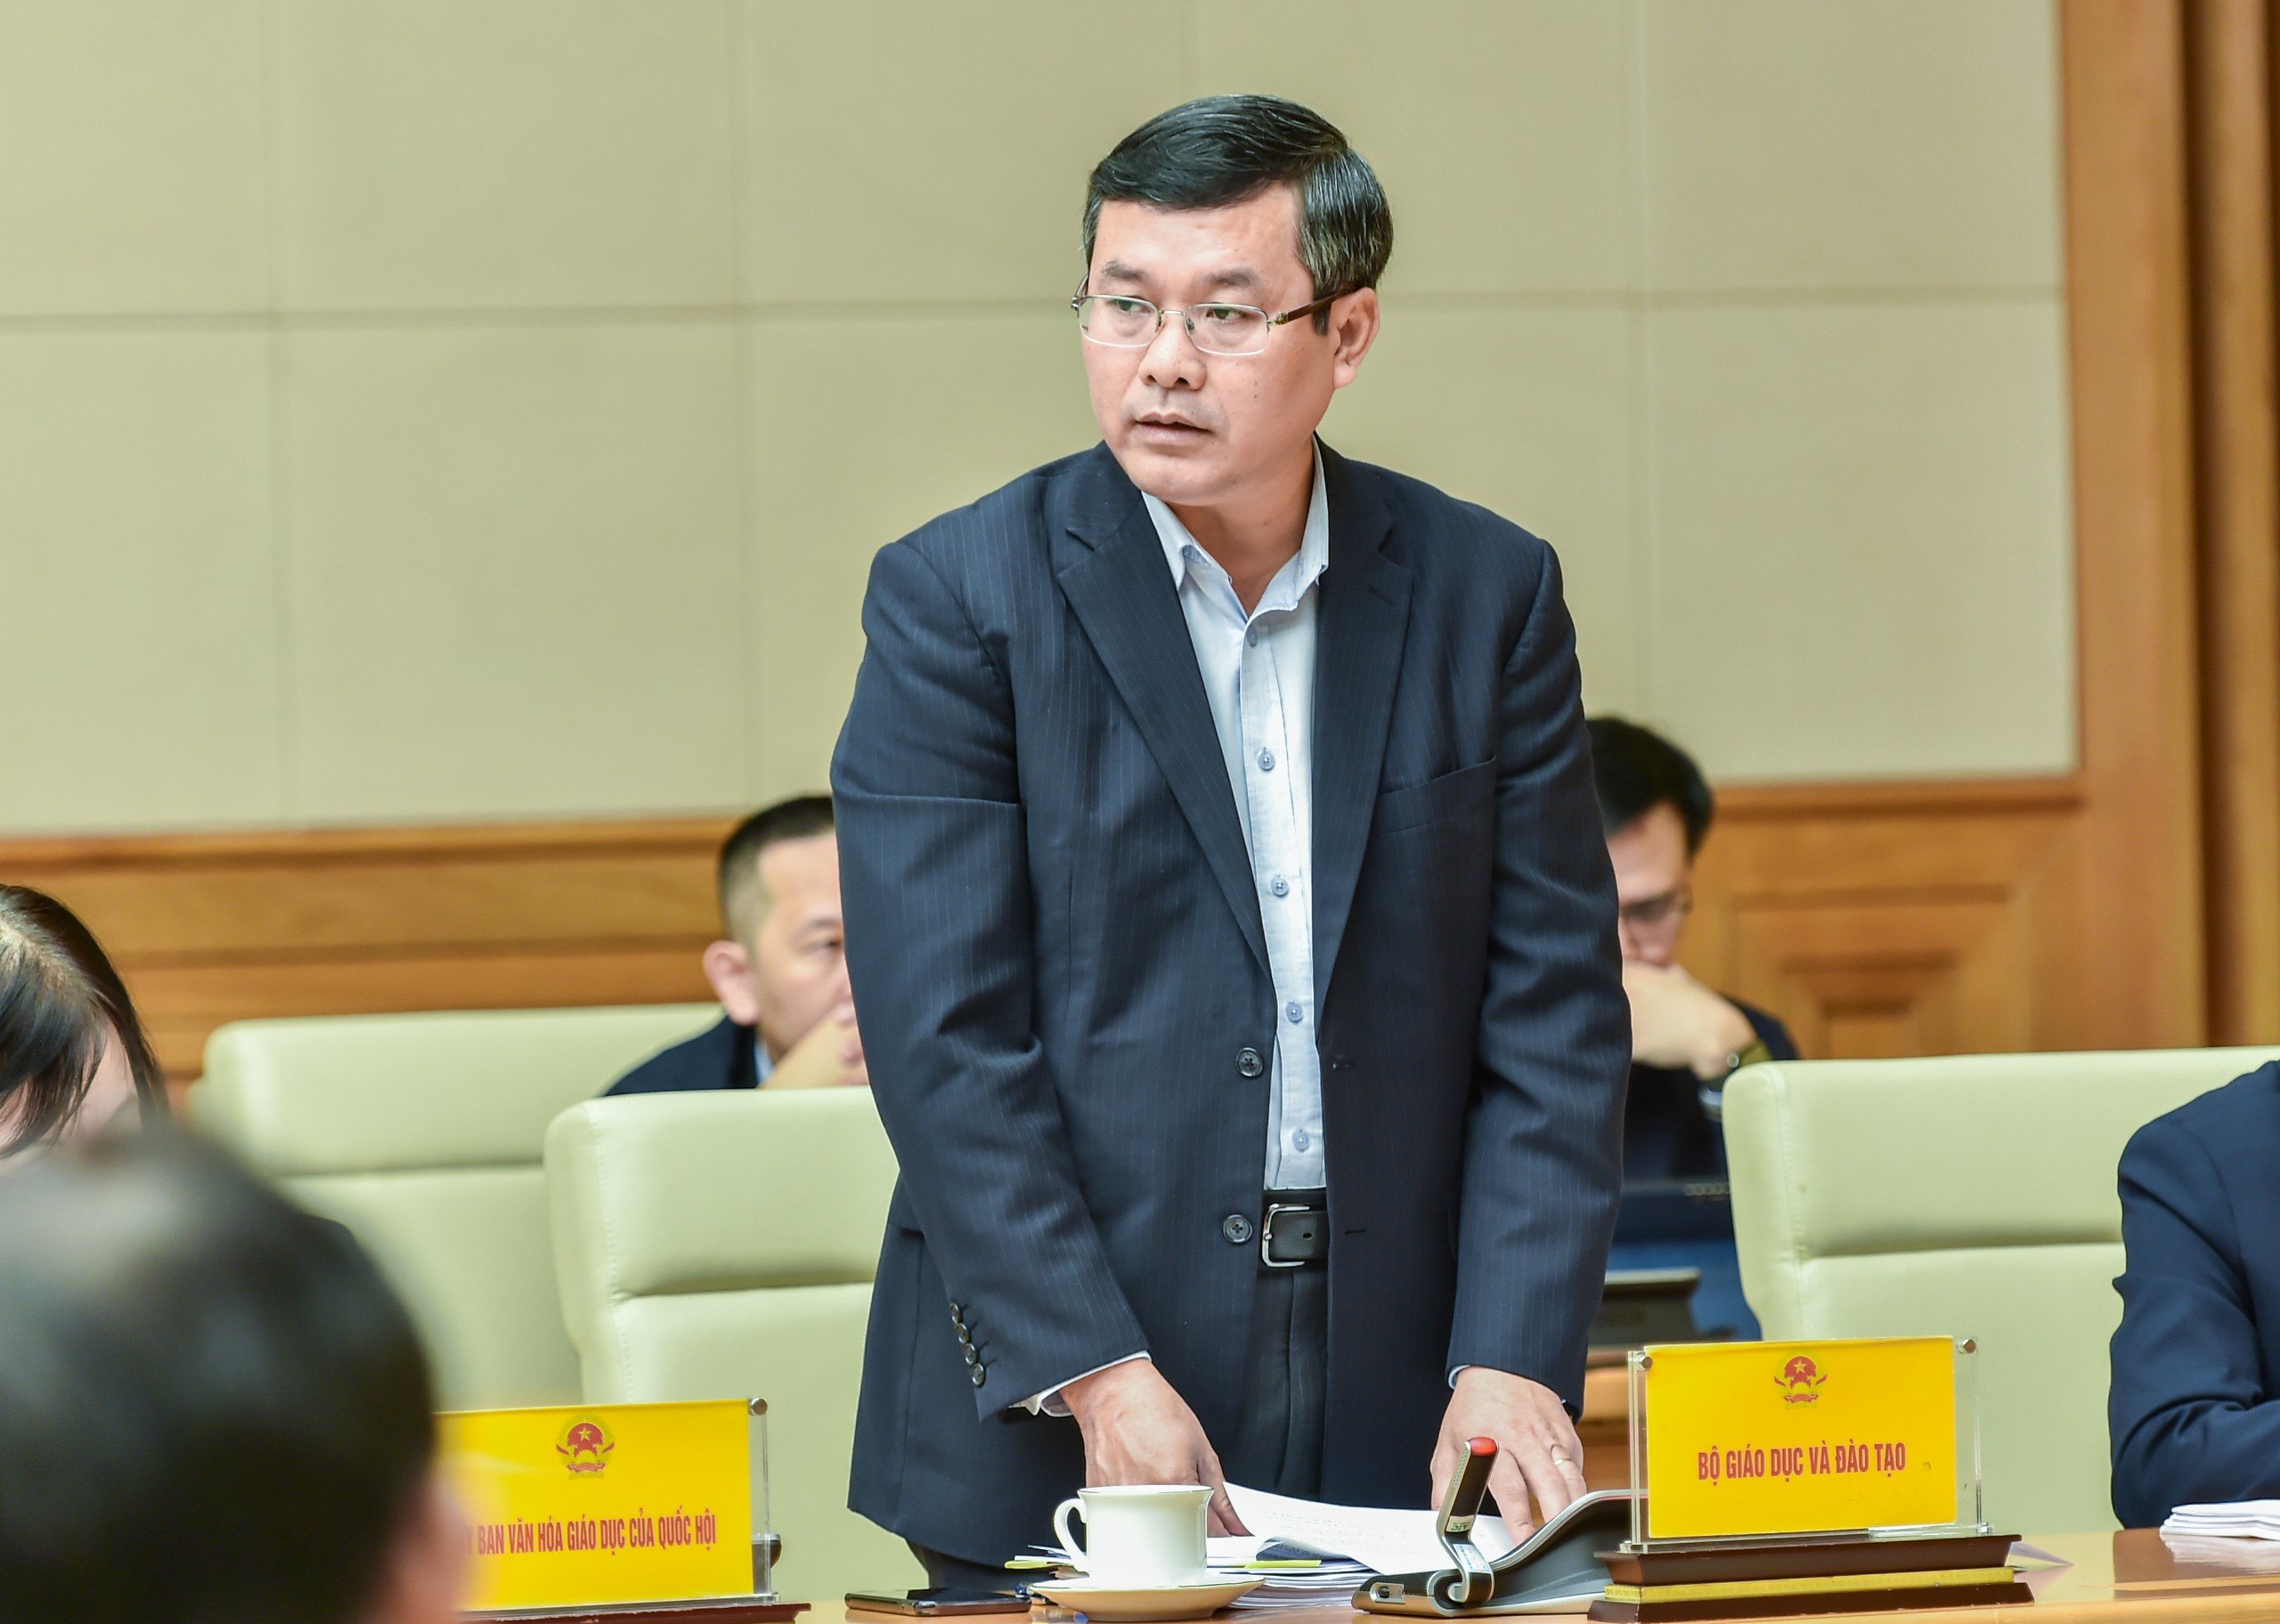 Thứ trưởng Bộ GD&ĐT Nguyễn Văn Phúc báo cáo tóm tắt quá trình xây dựng Chiến lược.